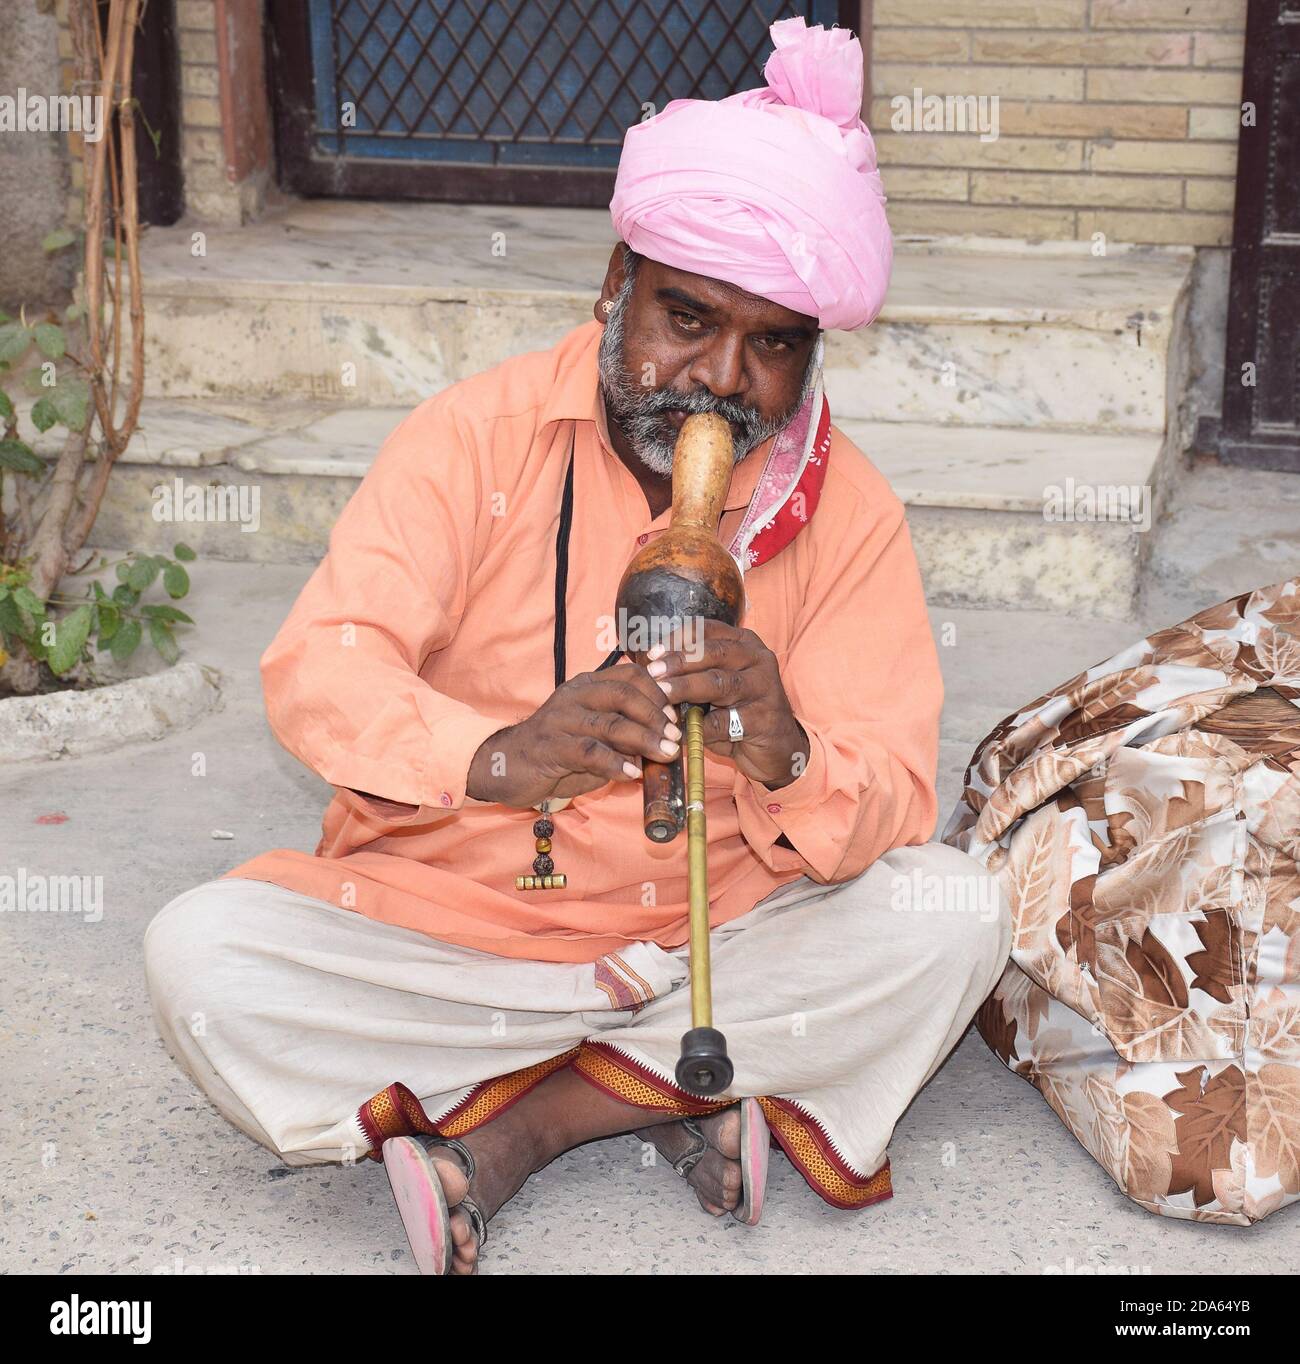 Charmeur de serpent indien jouant avec son instrument de musique également appelé Pungi ou Been en langue hindi. Gros plan Banque D'Images